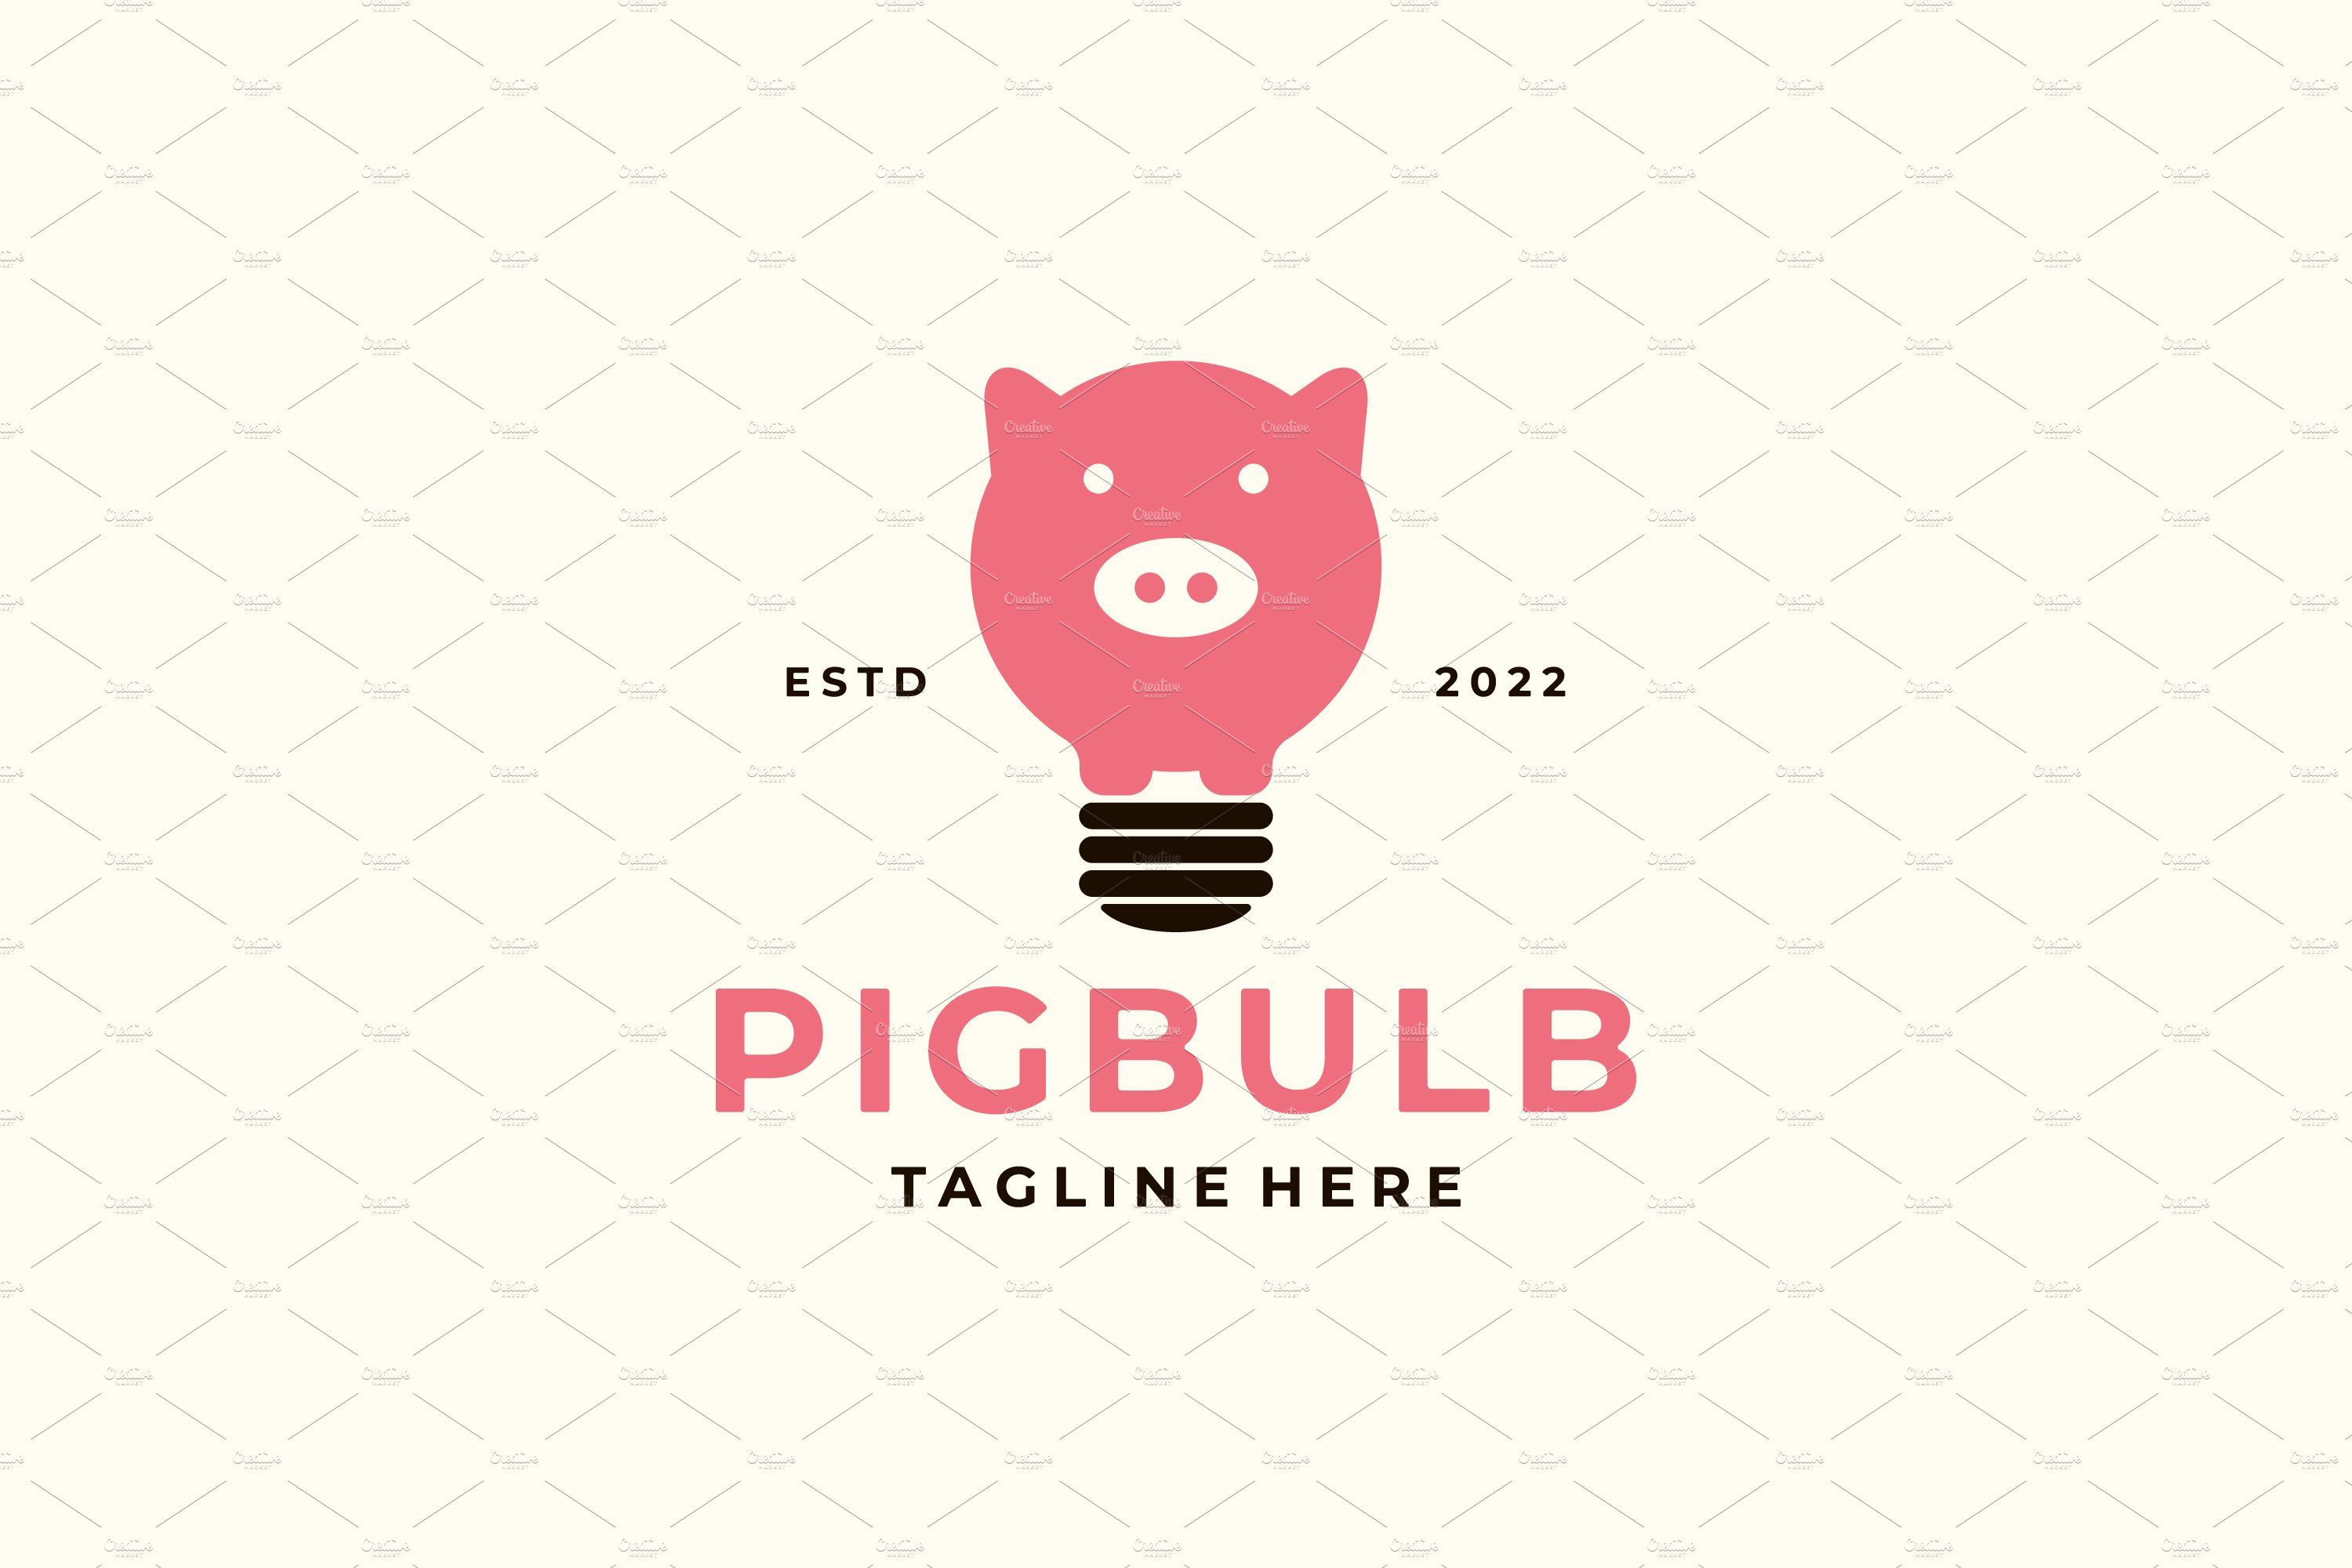 Pig Bulb Logo cover image.